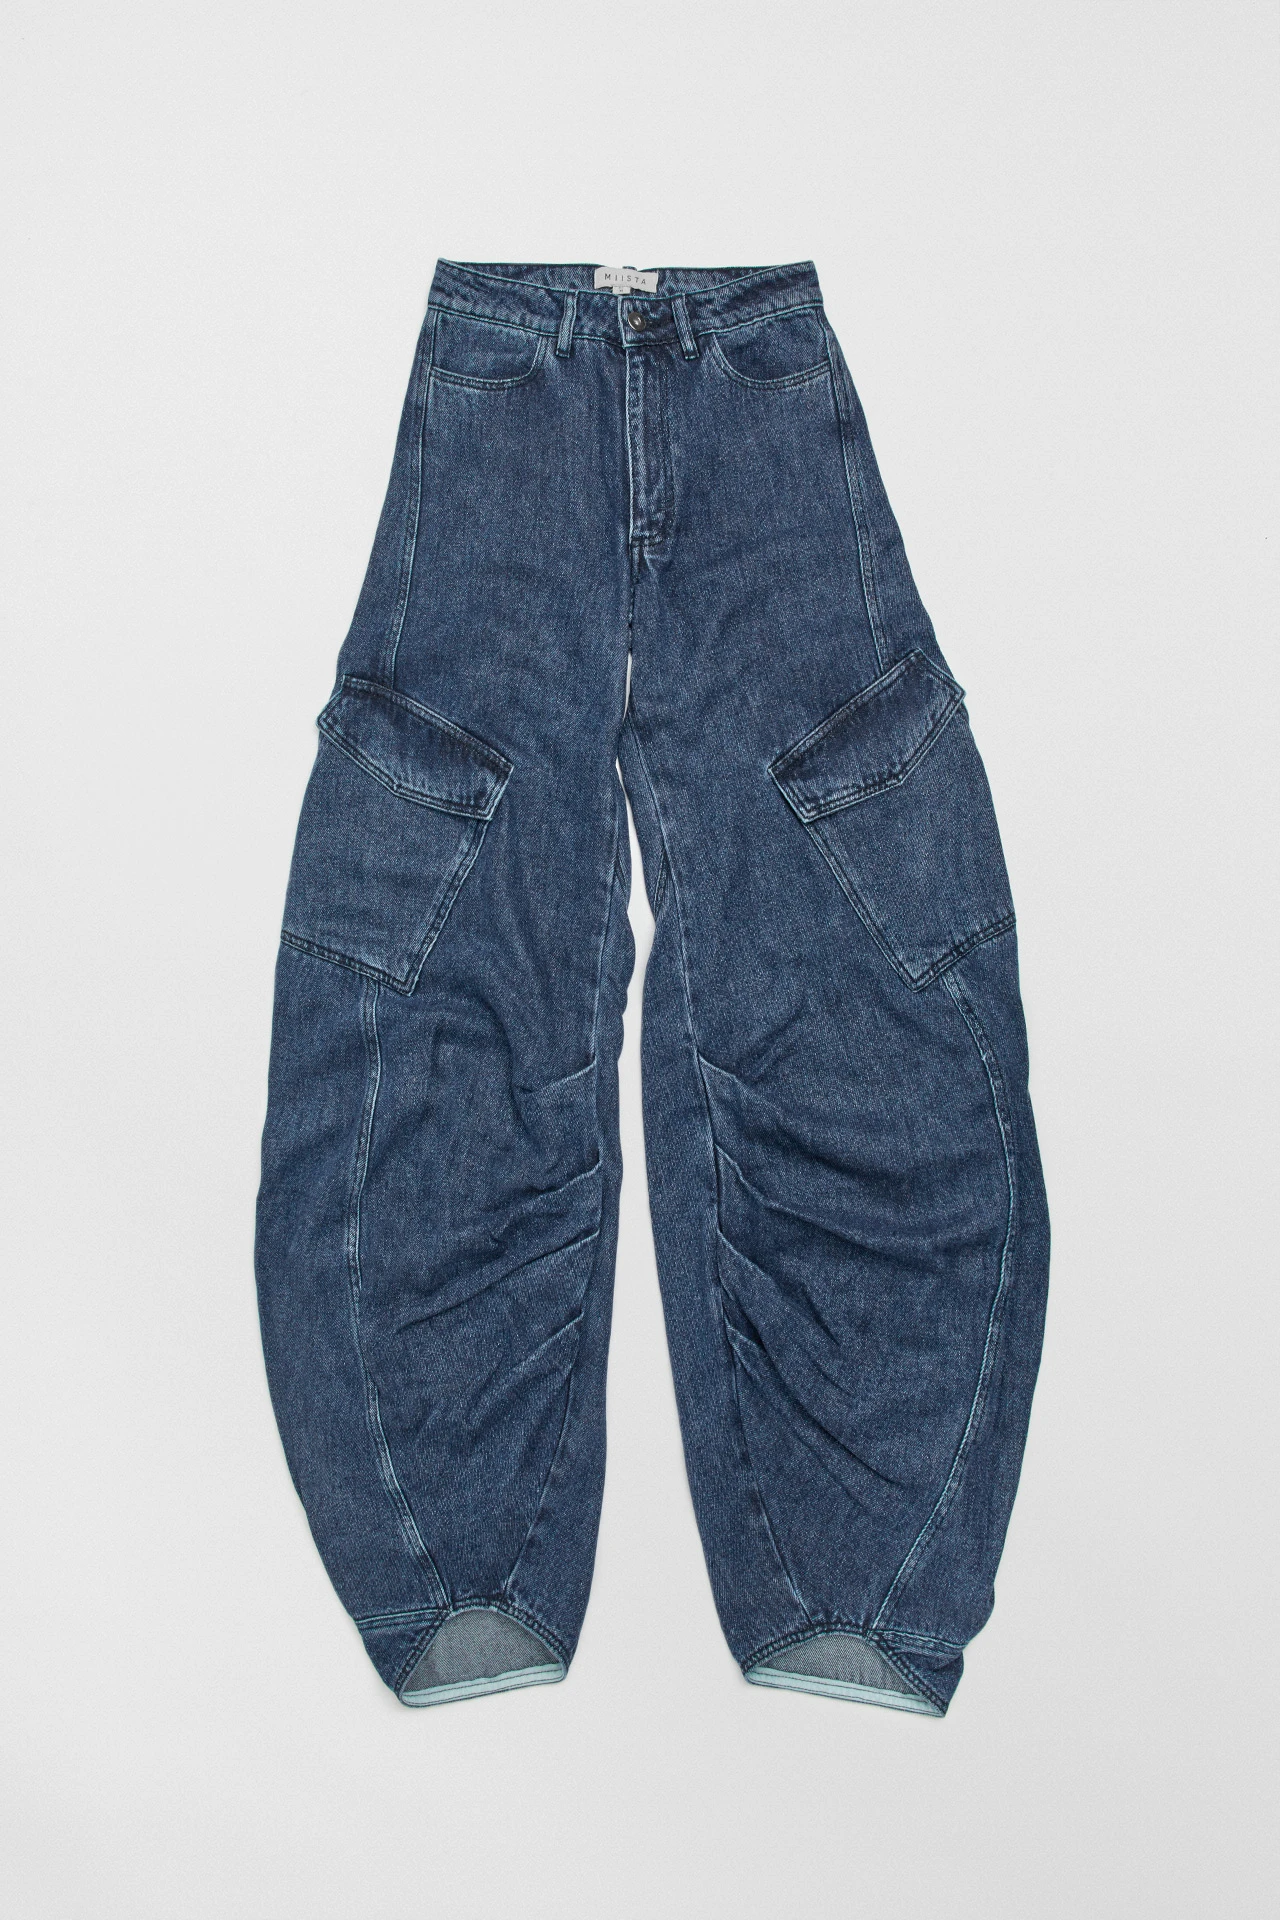 Miista-sibuca-blue-jeans-01